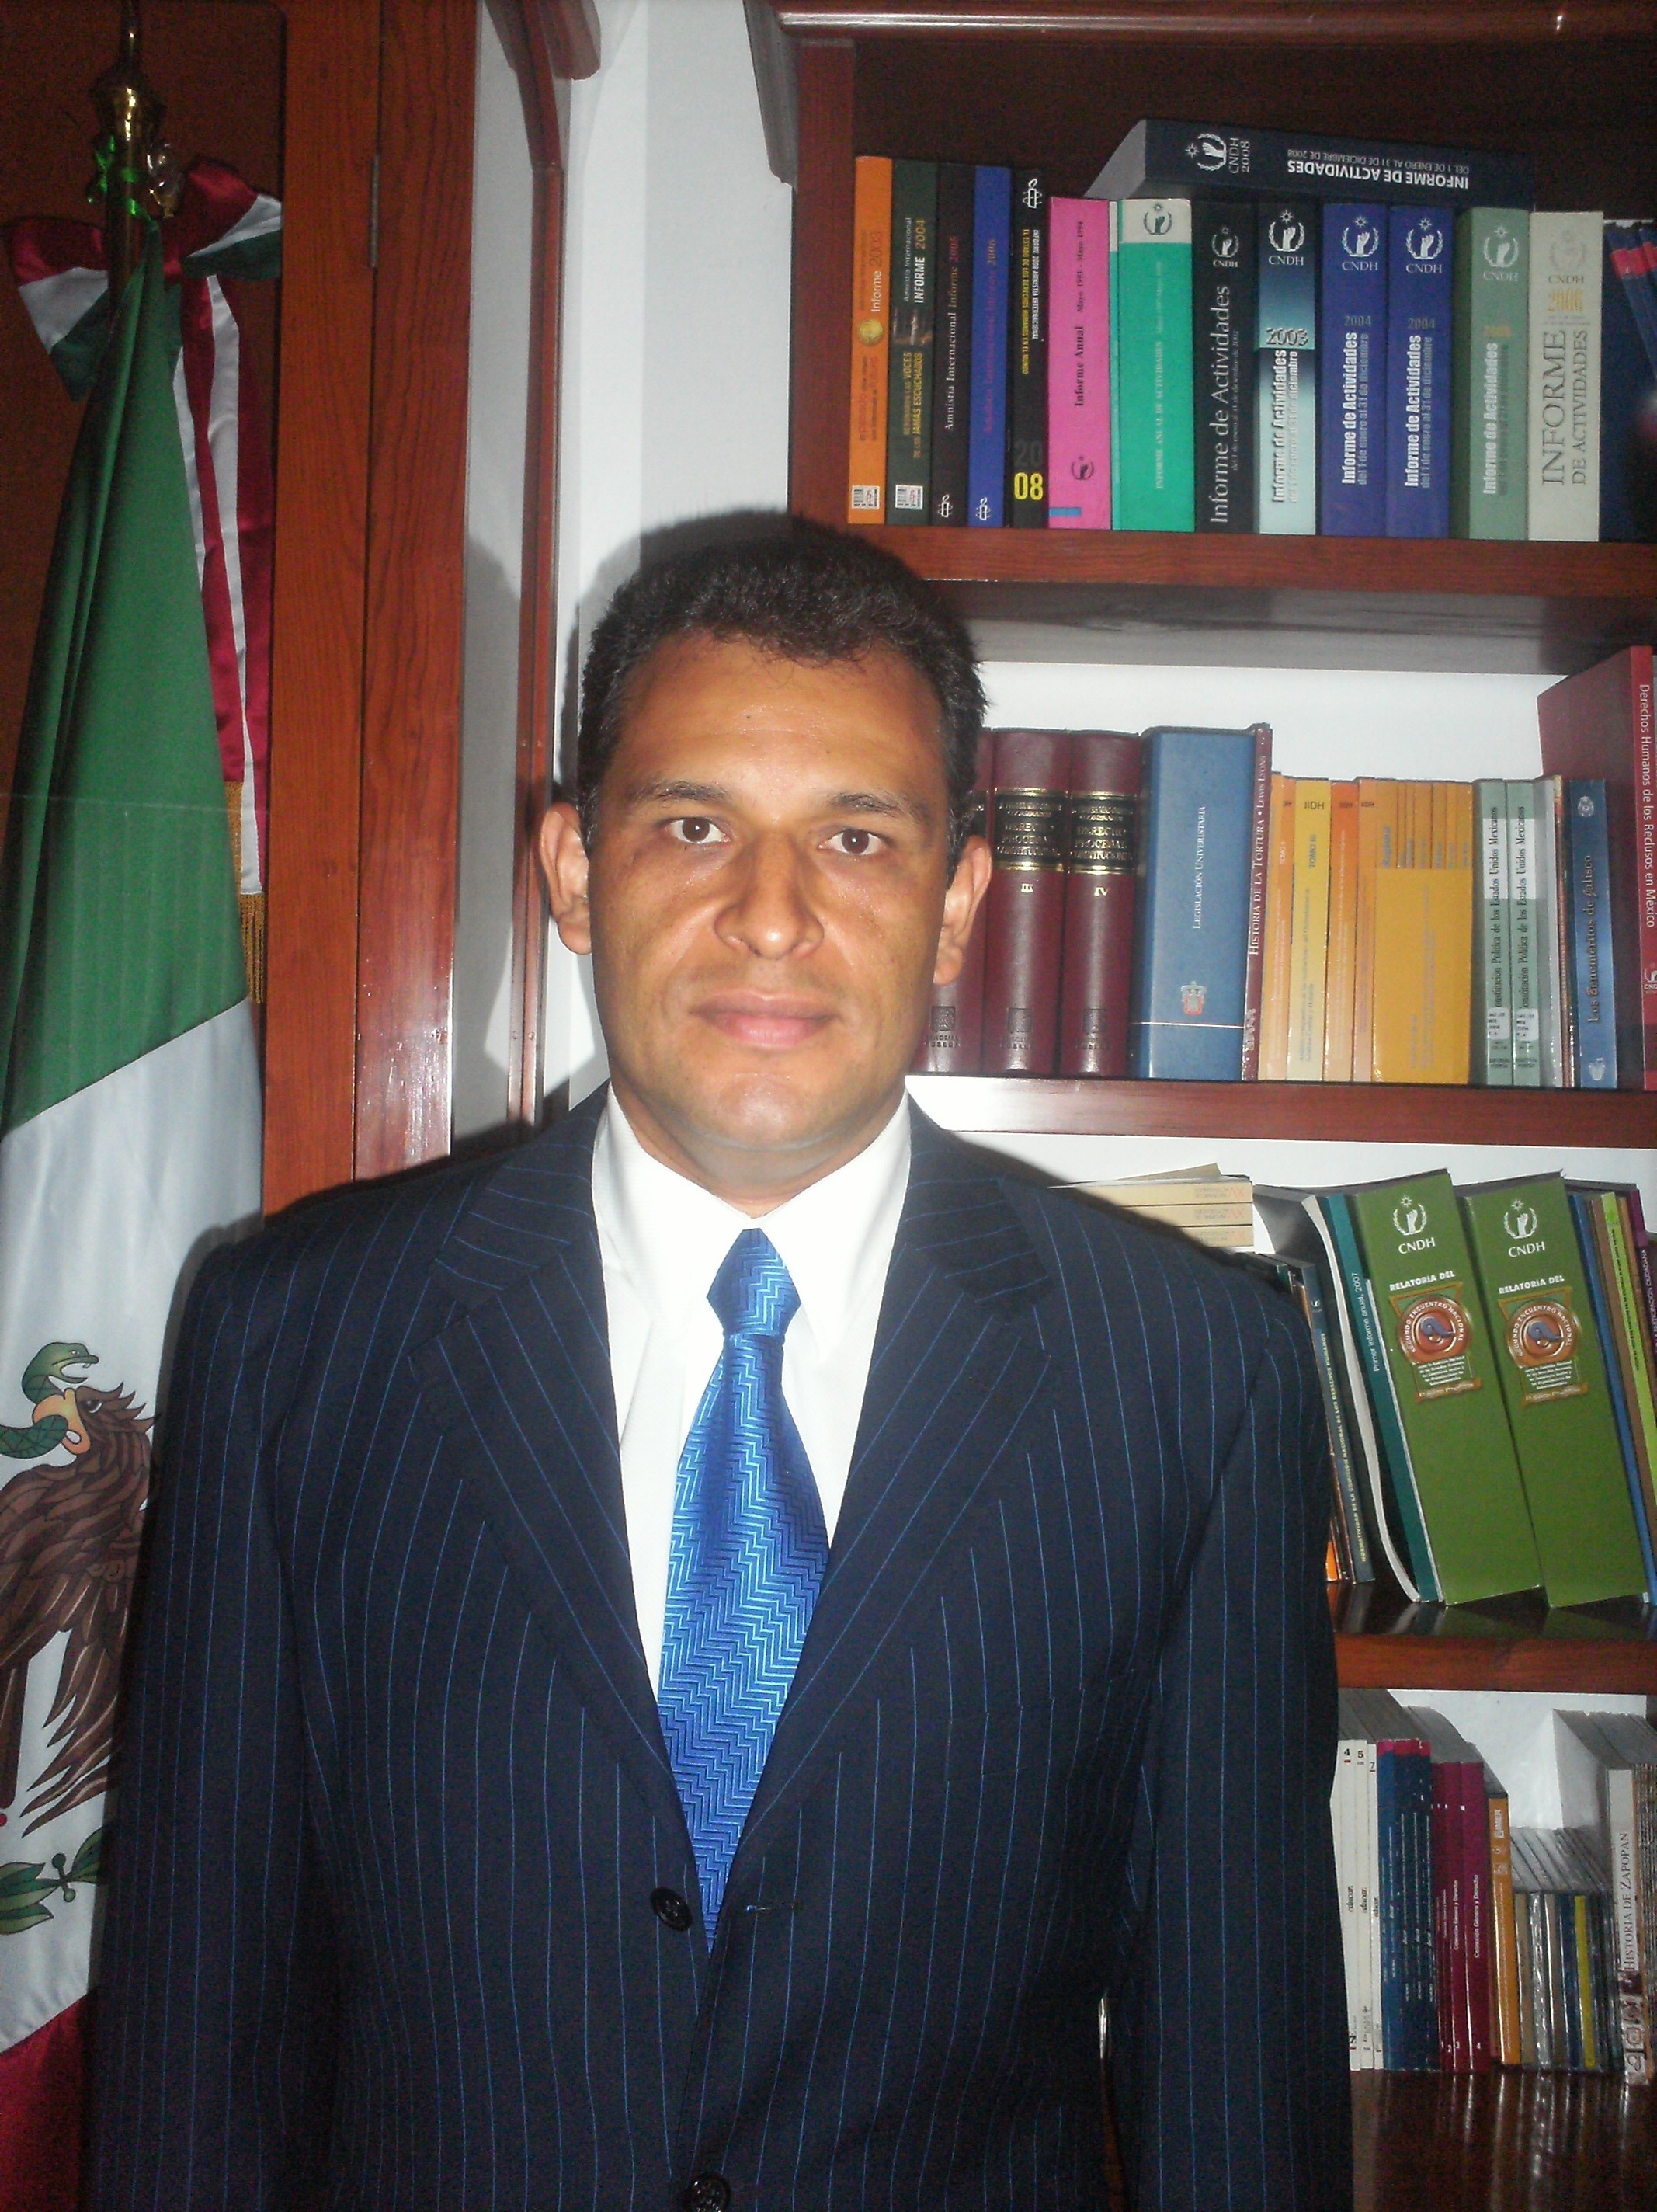 Comisión Estatal de Derechos Humanos Jalisco